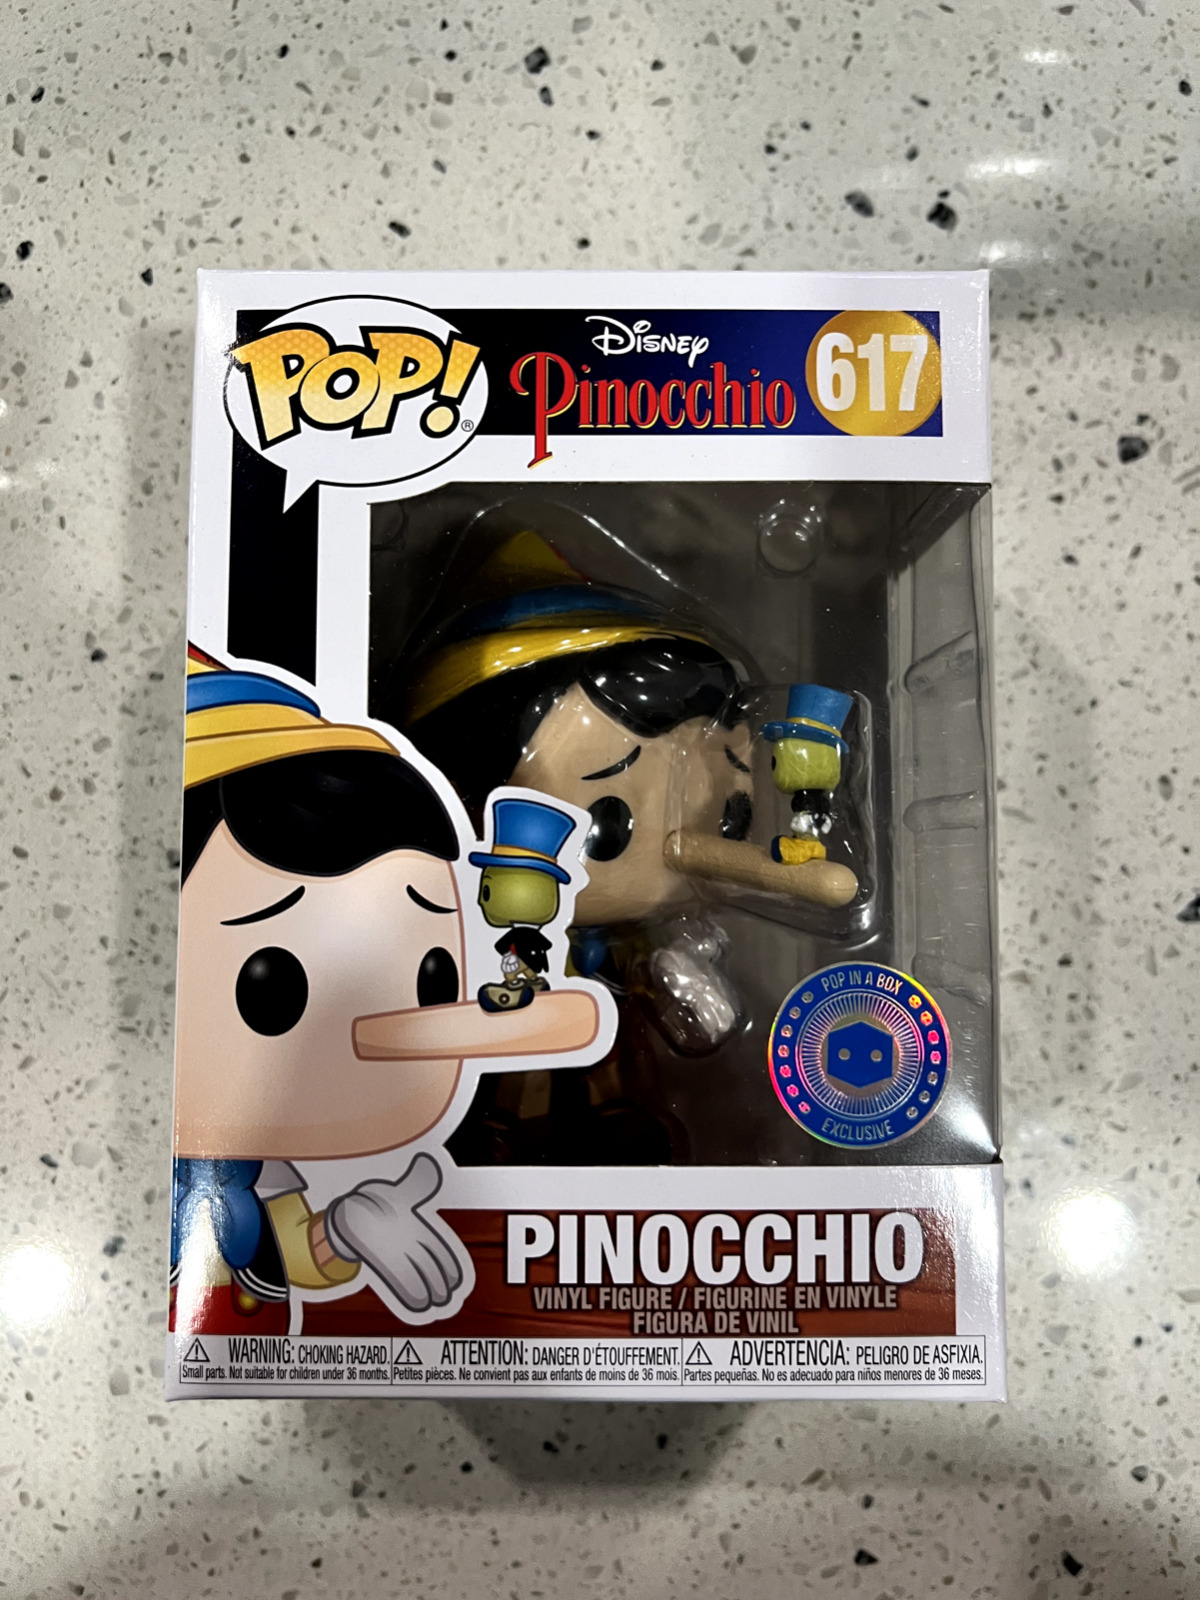 Funko Pop Pinocchio 617 - Pop In A Box Exclusive